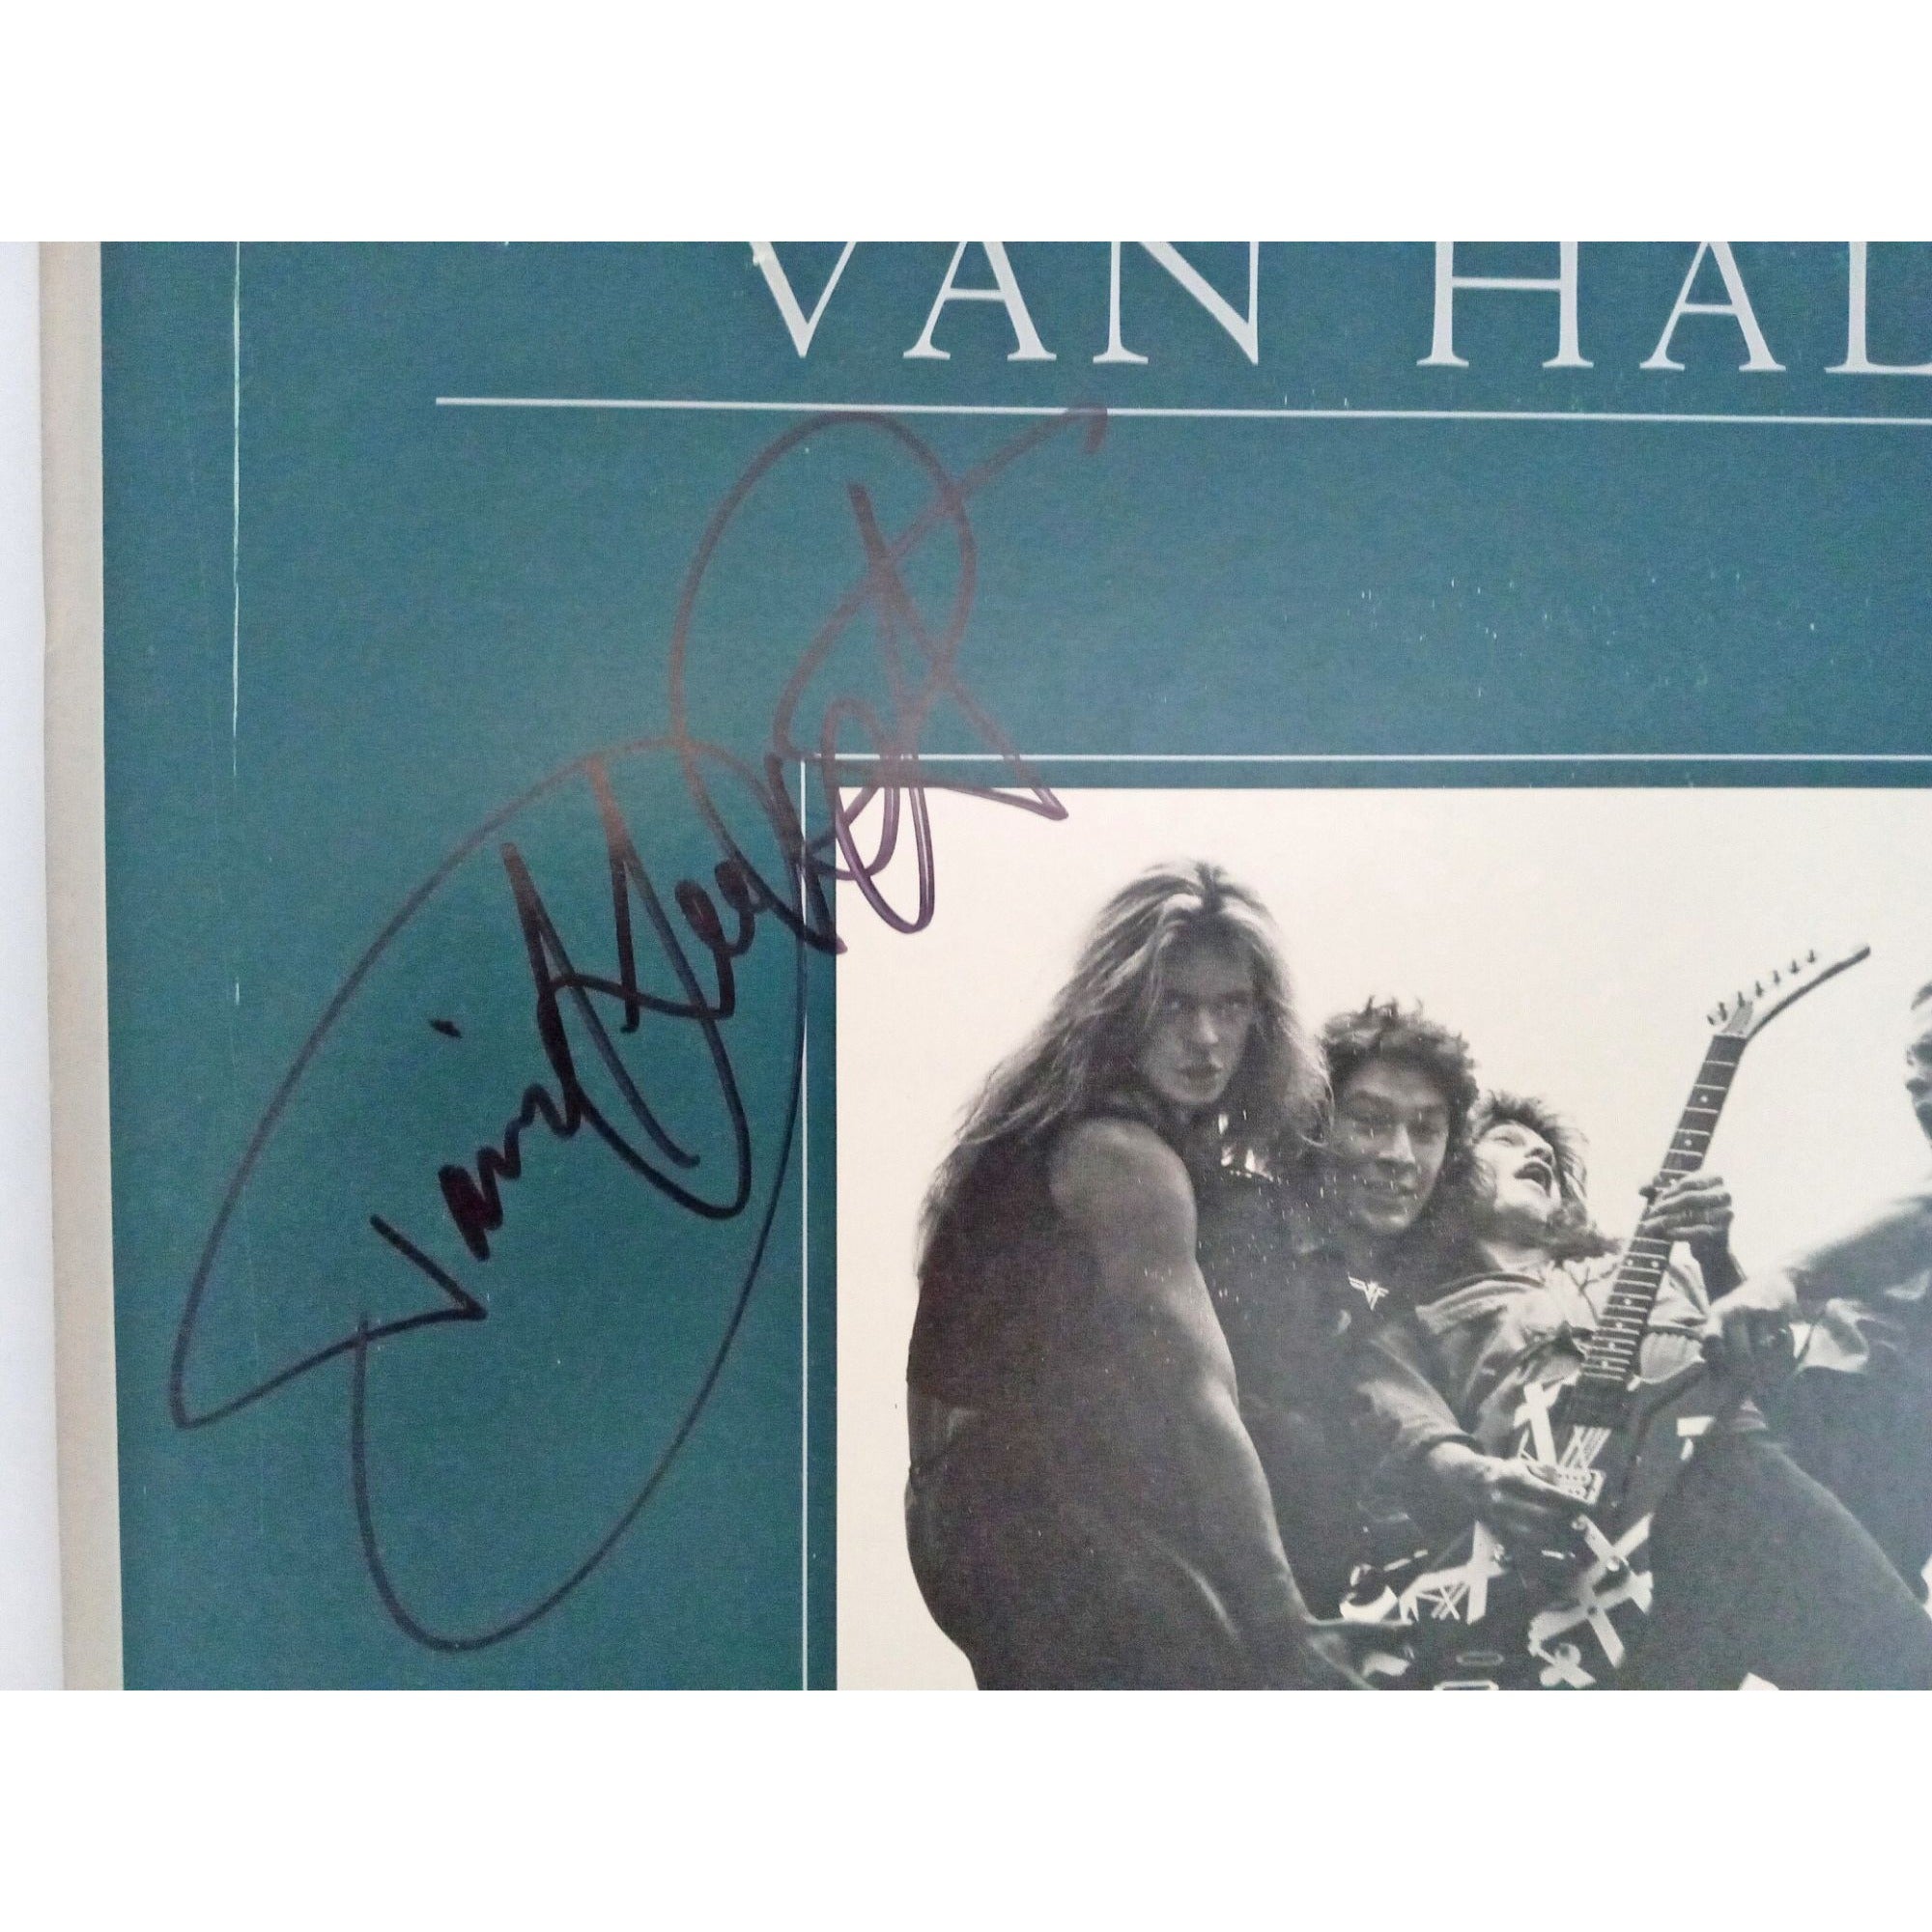 Van Halen "Women & Children First" LP signed with proof